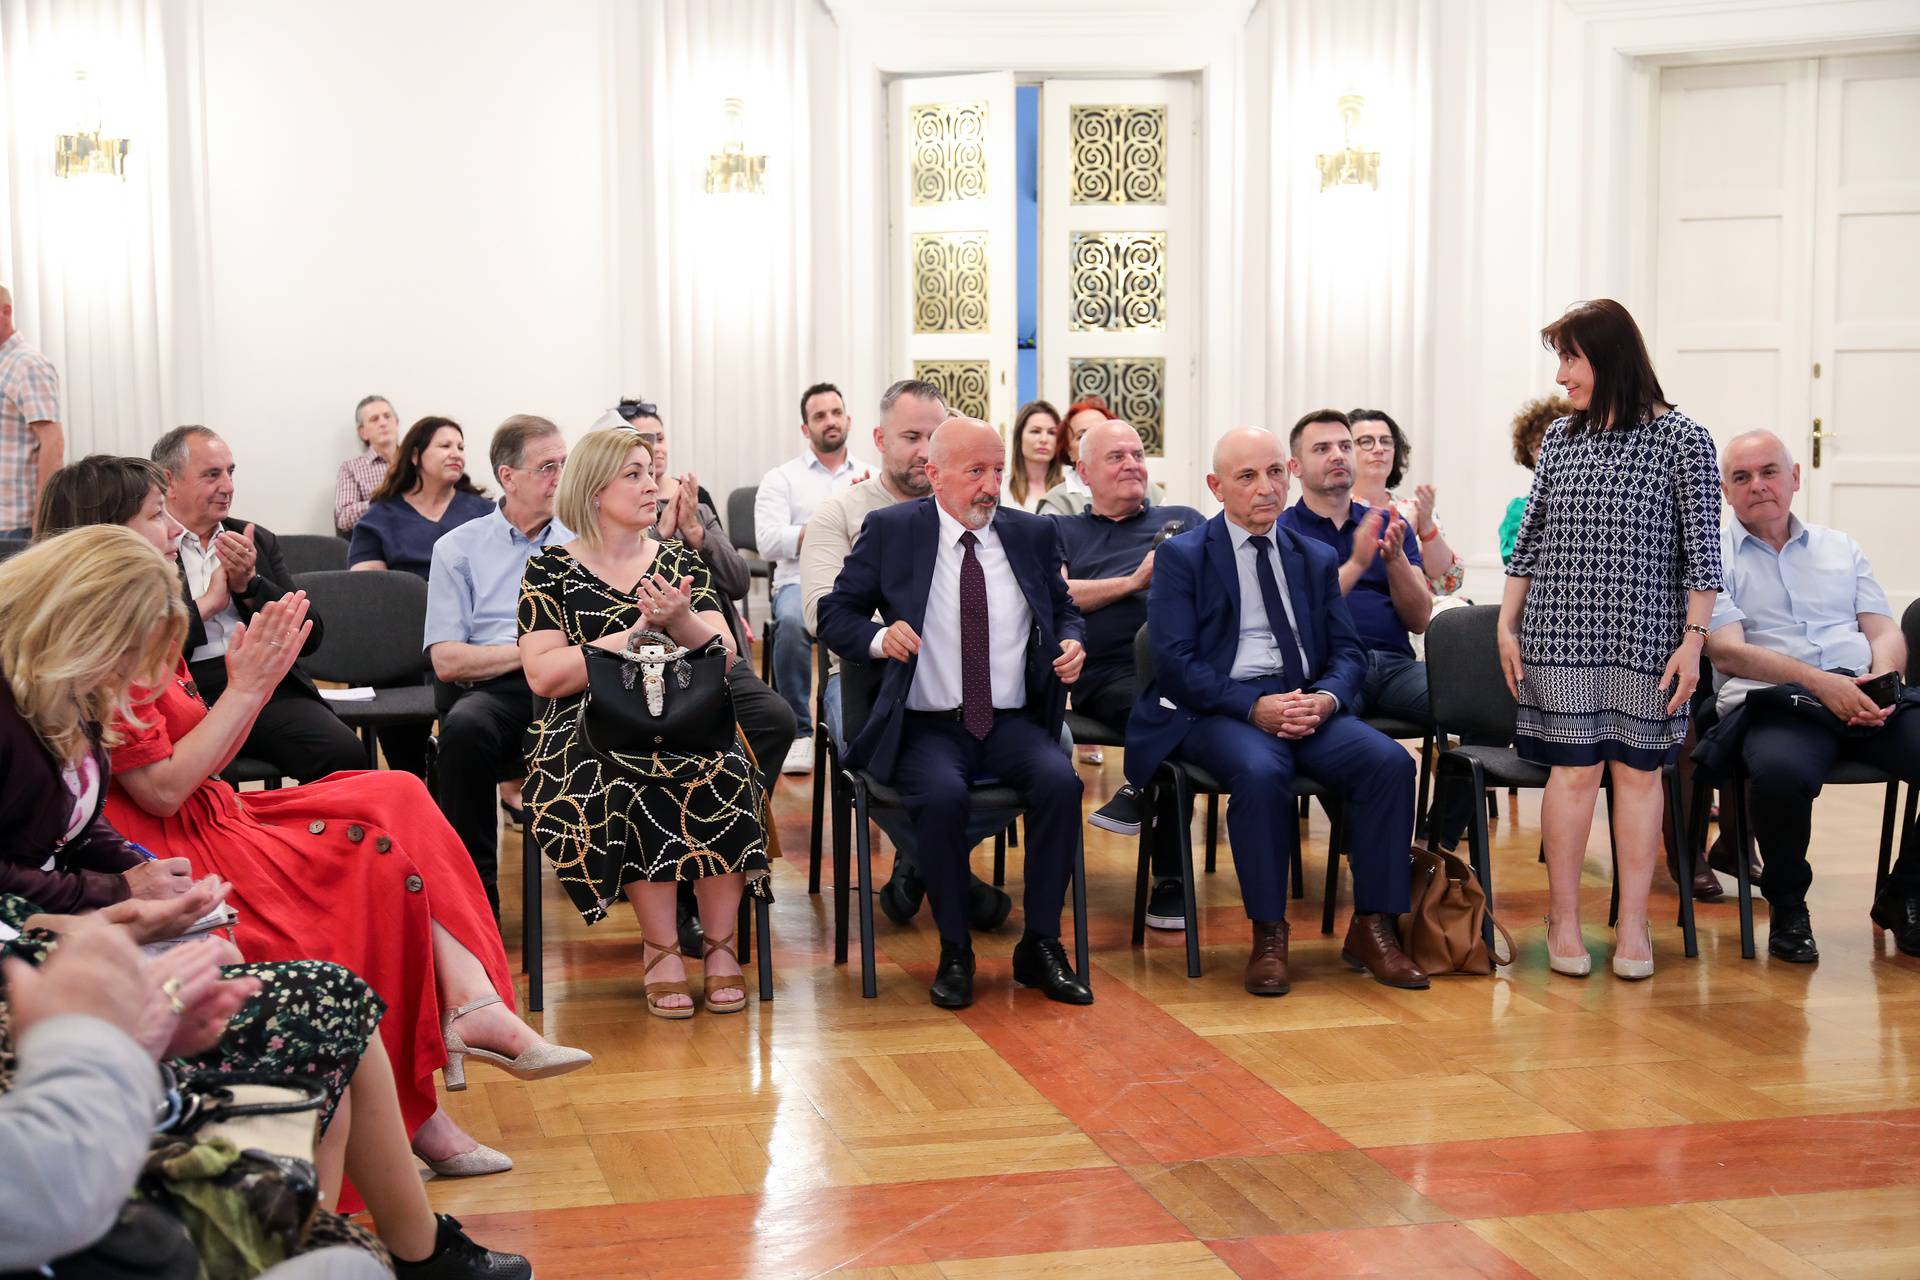 Zagreb:  Promocija knjige Albanci u Zagrebu I. dio 